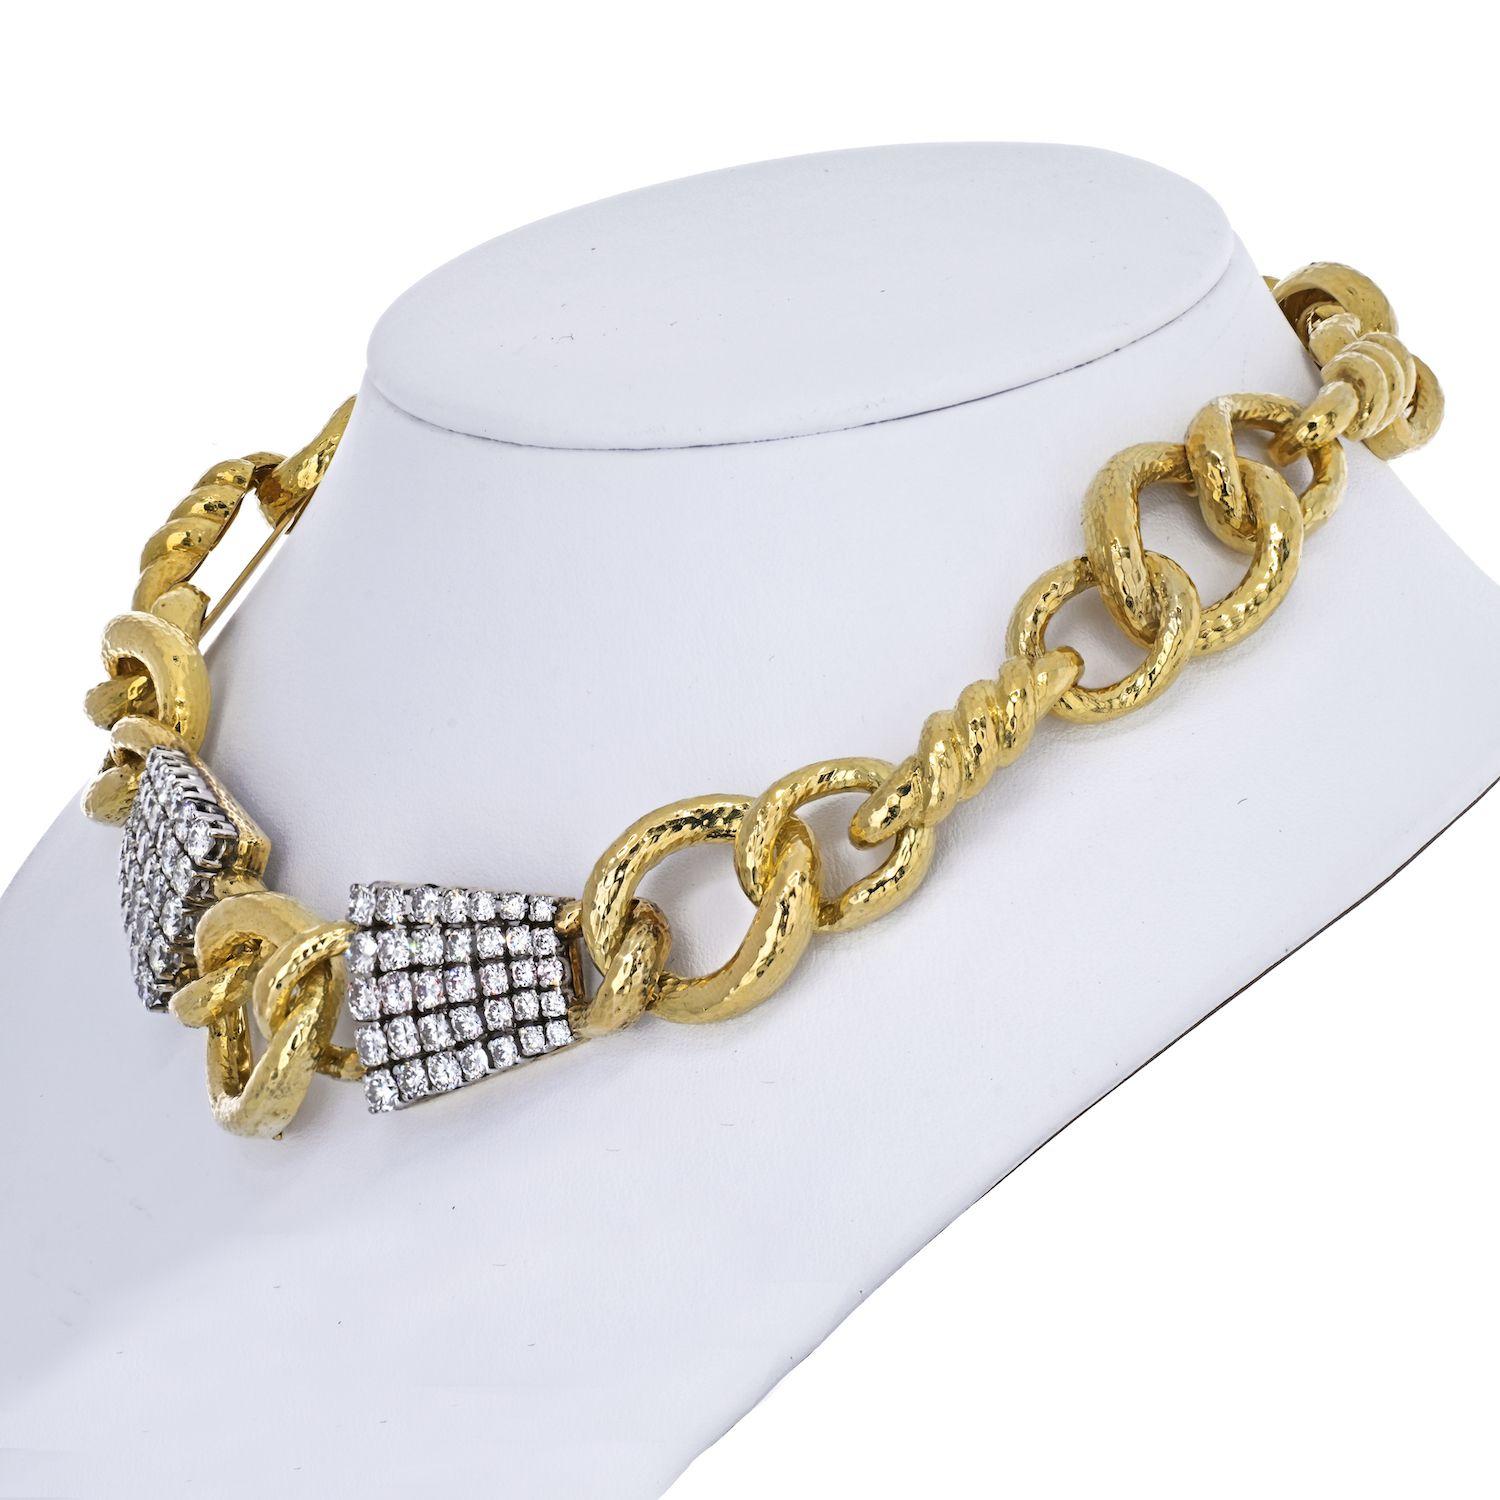 Das David Webb Twisted Rope Link Diamond Collar Collier ist ein wahres Meisterwerk, das elegant mit Brillanten, gehämmertem 18-karätigem Gold und Platin gearbeitet ist. Dieses exquisite Stück misst 16 Zoll in der Länge und hat ein beträchtliches